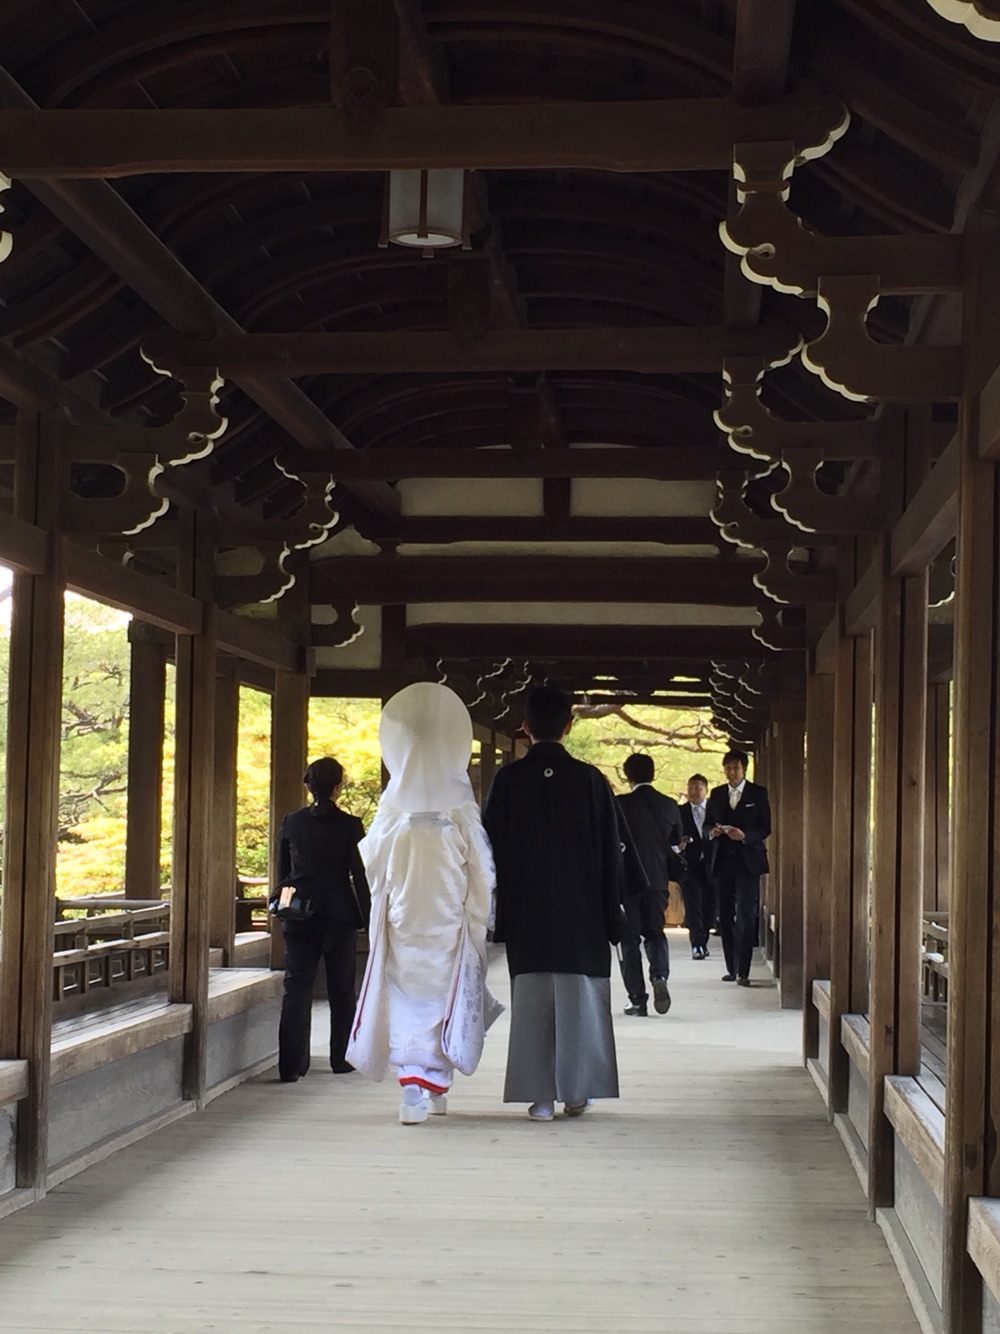 御苑算是典型的日本园林 看到别人结婚